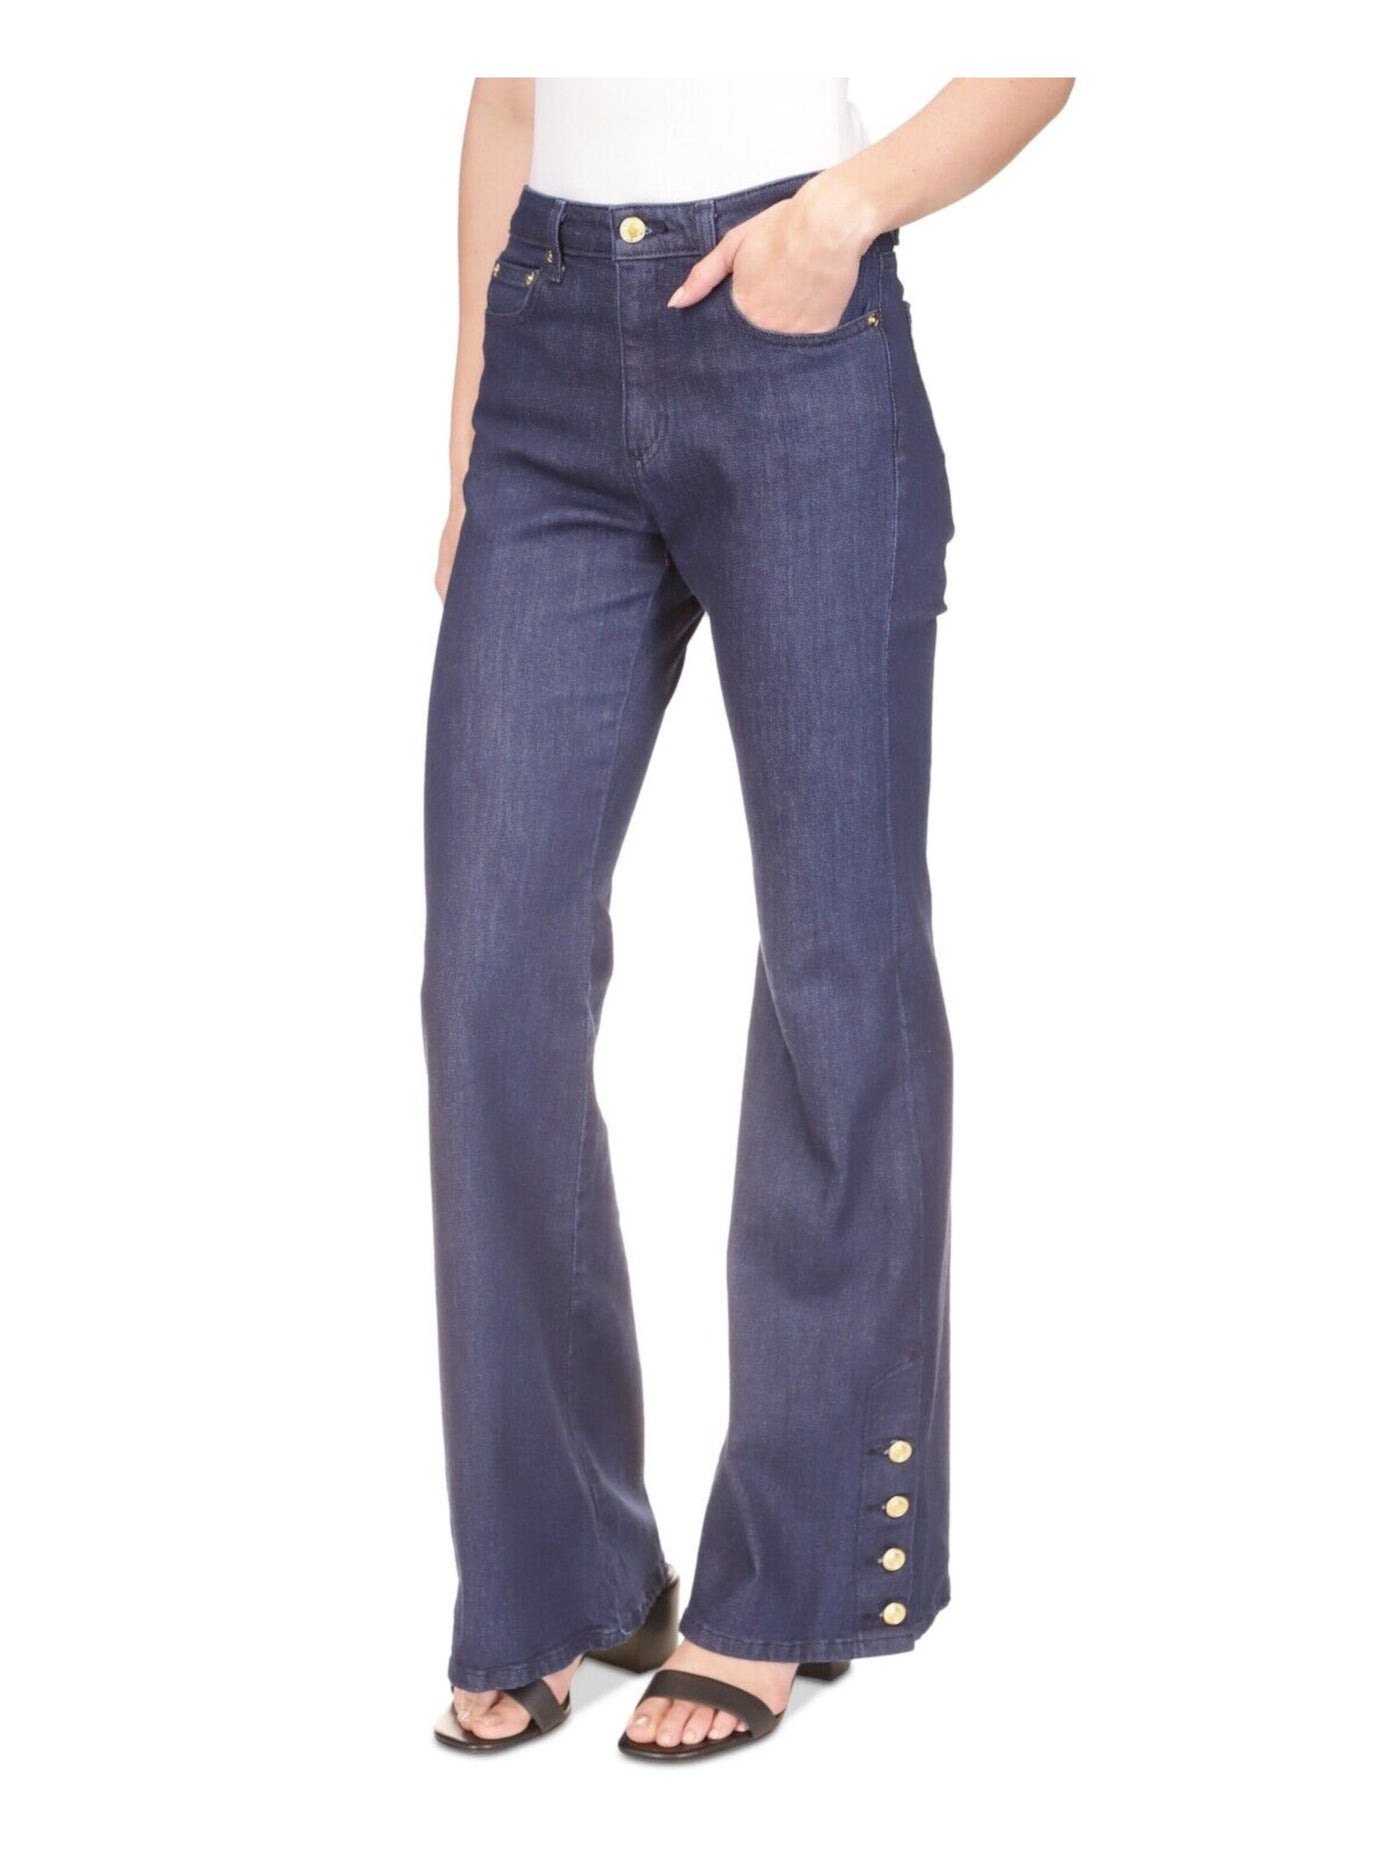 MICHAEL MICHAEL KORS Womens Navy Zippered Pocketed Button-hem Flare Leg High Waist Jeans Petites 6P